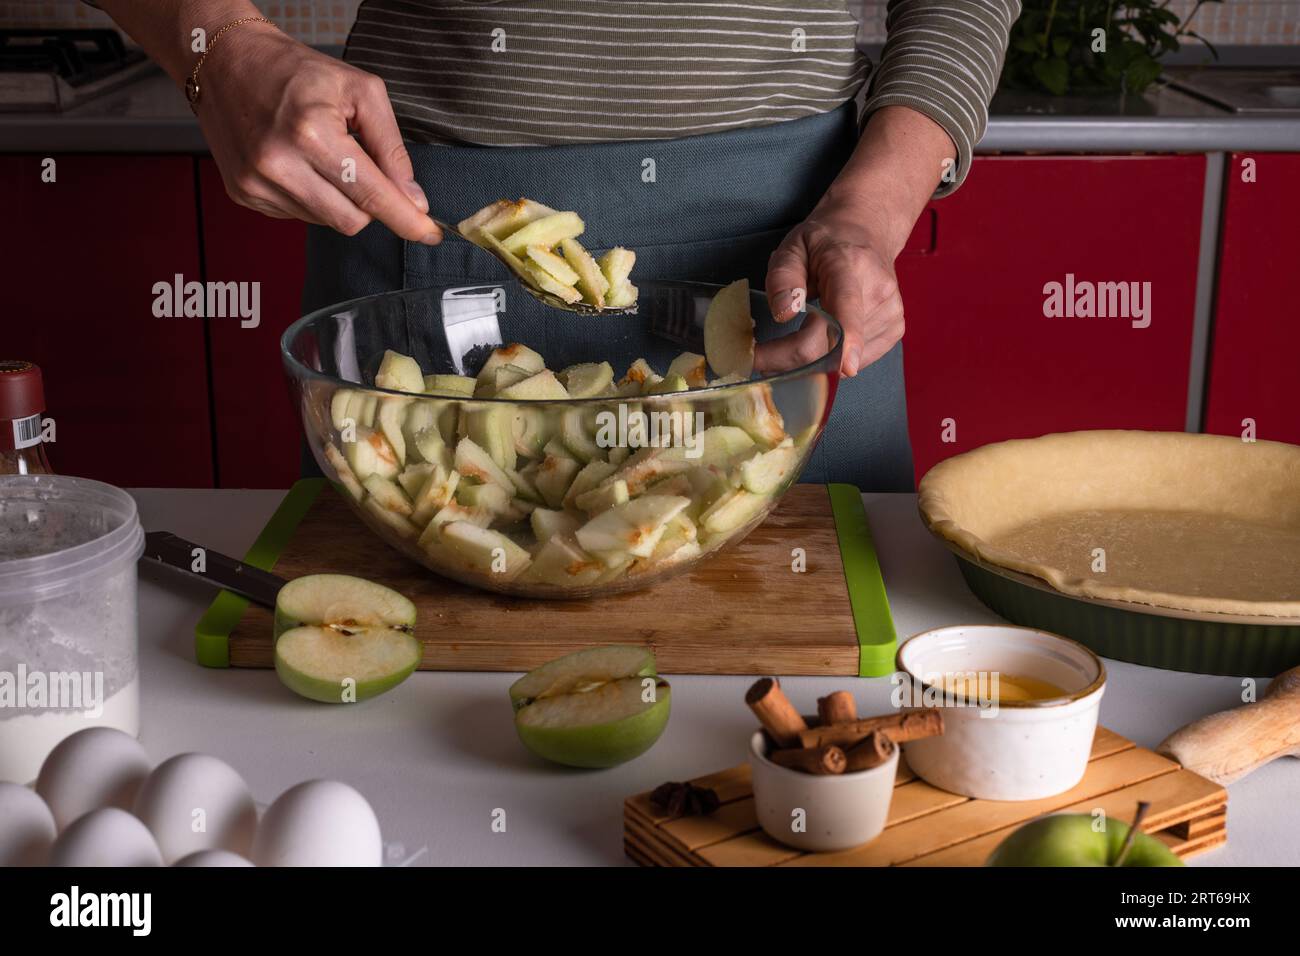 Femme mélangeant des pommes coupées dans un bol avec des épices, cannelle, anice, sucre, cuisson de tarte aux pommes dans la cuisine entourée d'autres ingrédients, Thanksgivi Banque D'Images